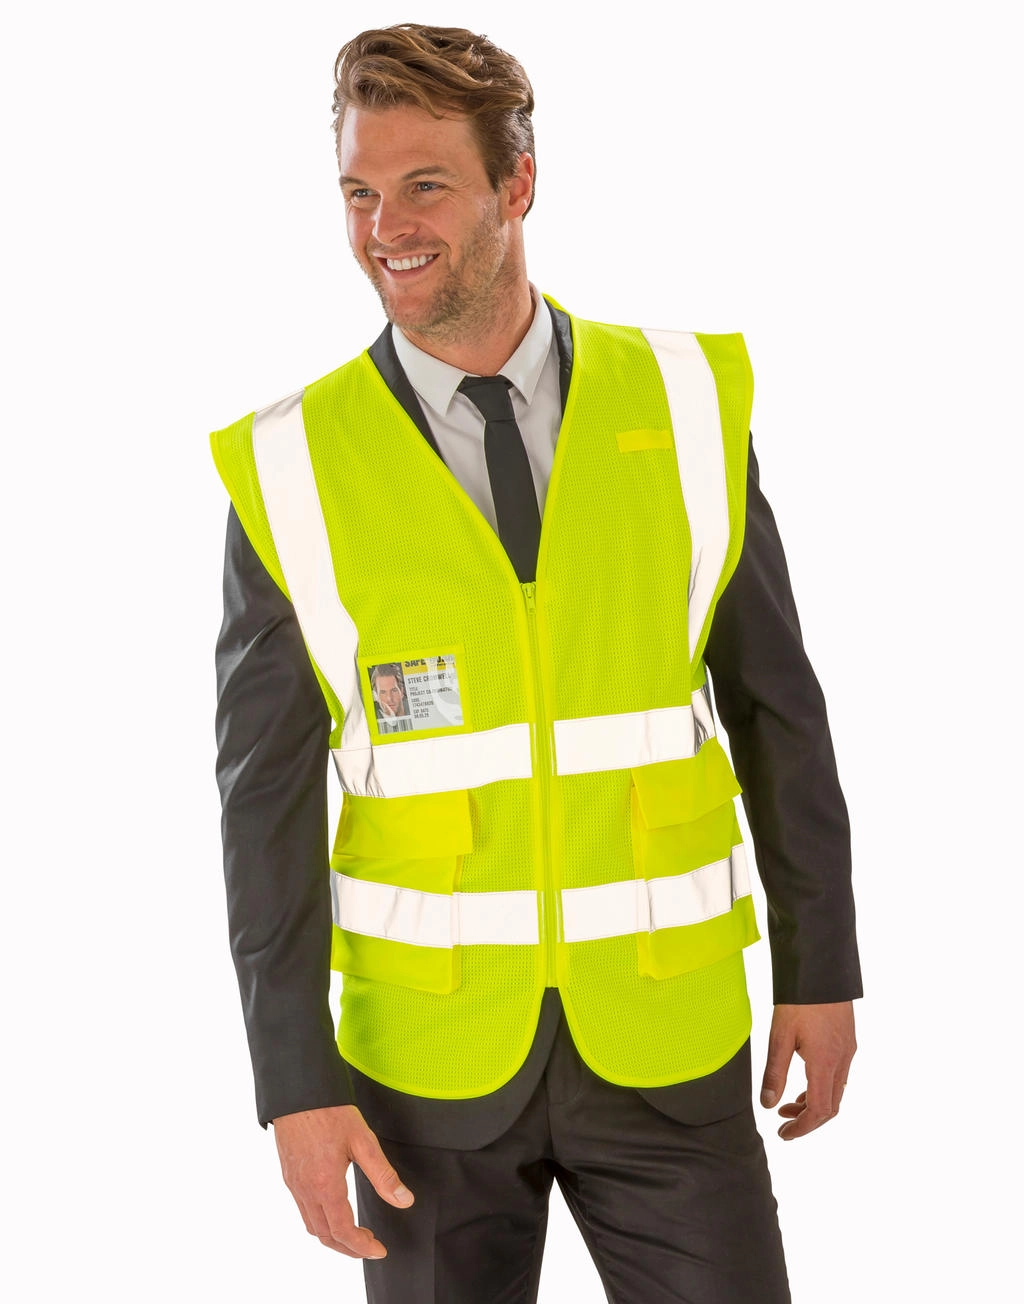 Executive Cool Mesh Safety Vest zum Besticken und Bedrucken mit Ihren Logo, Schriftzug oder Motiv.